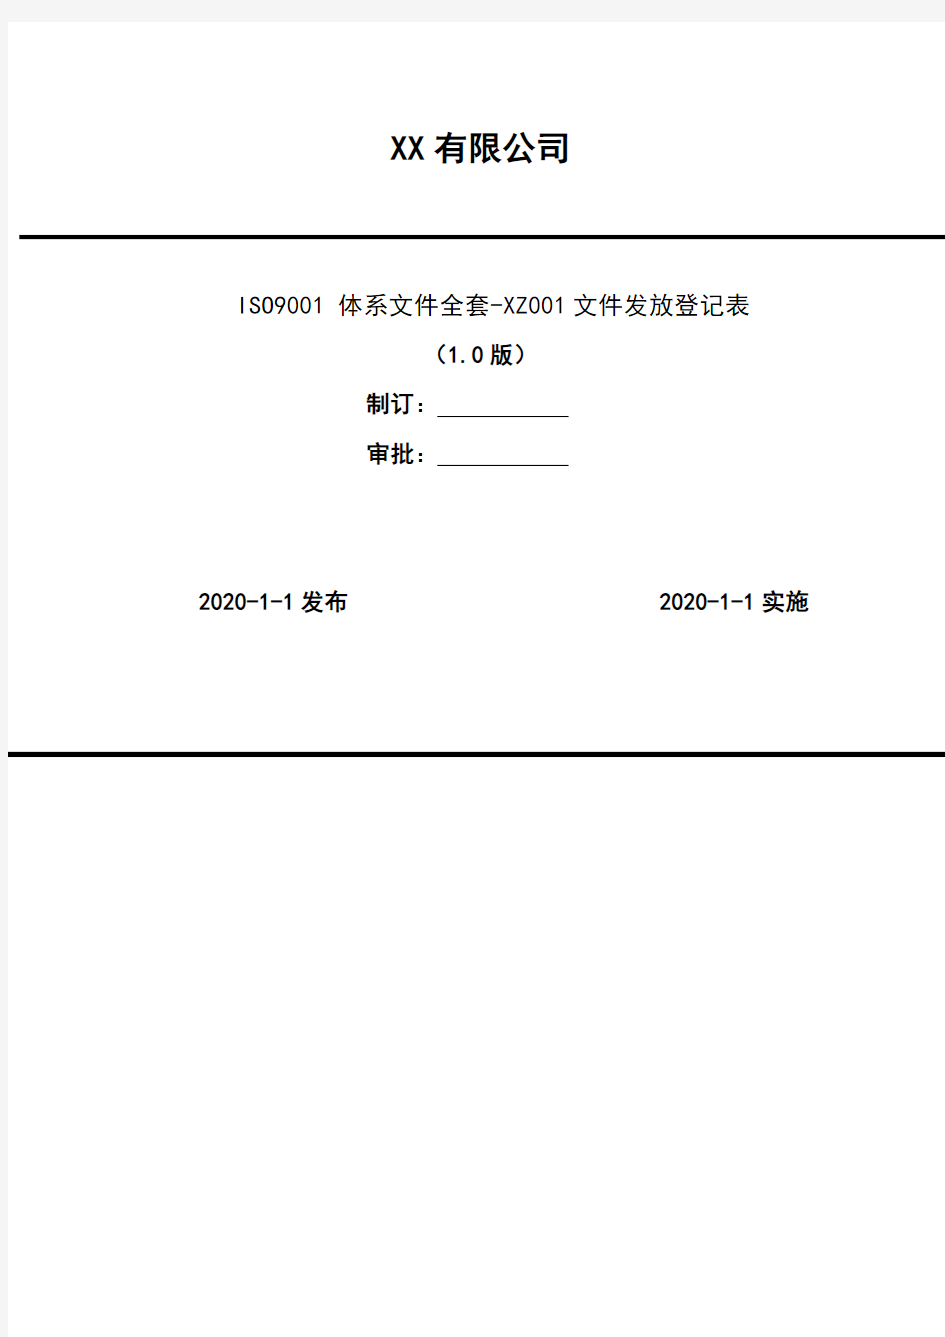 2020年  ISO9001 体系文件全套-XZ001文件发放登记表